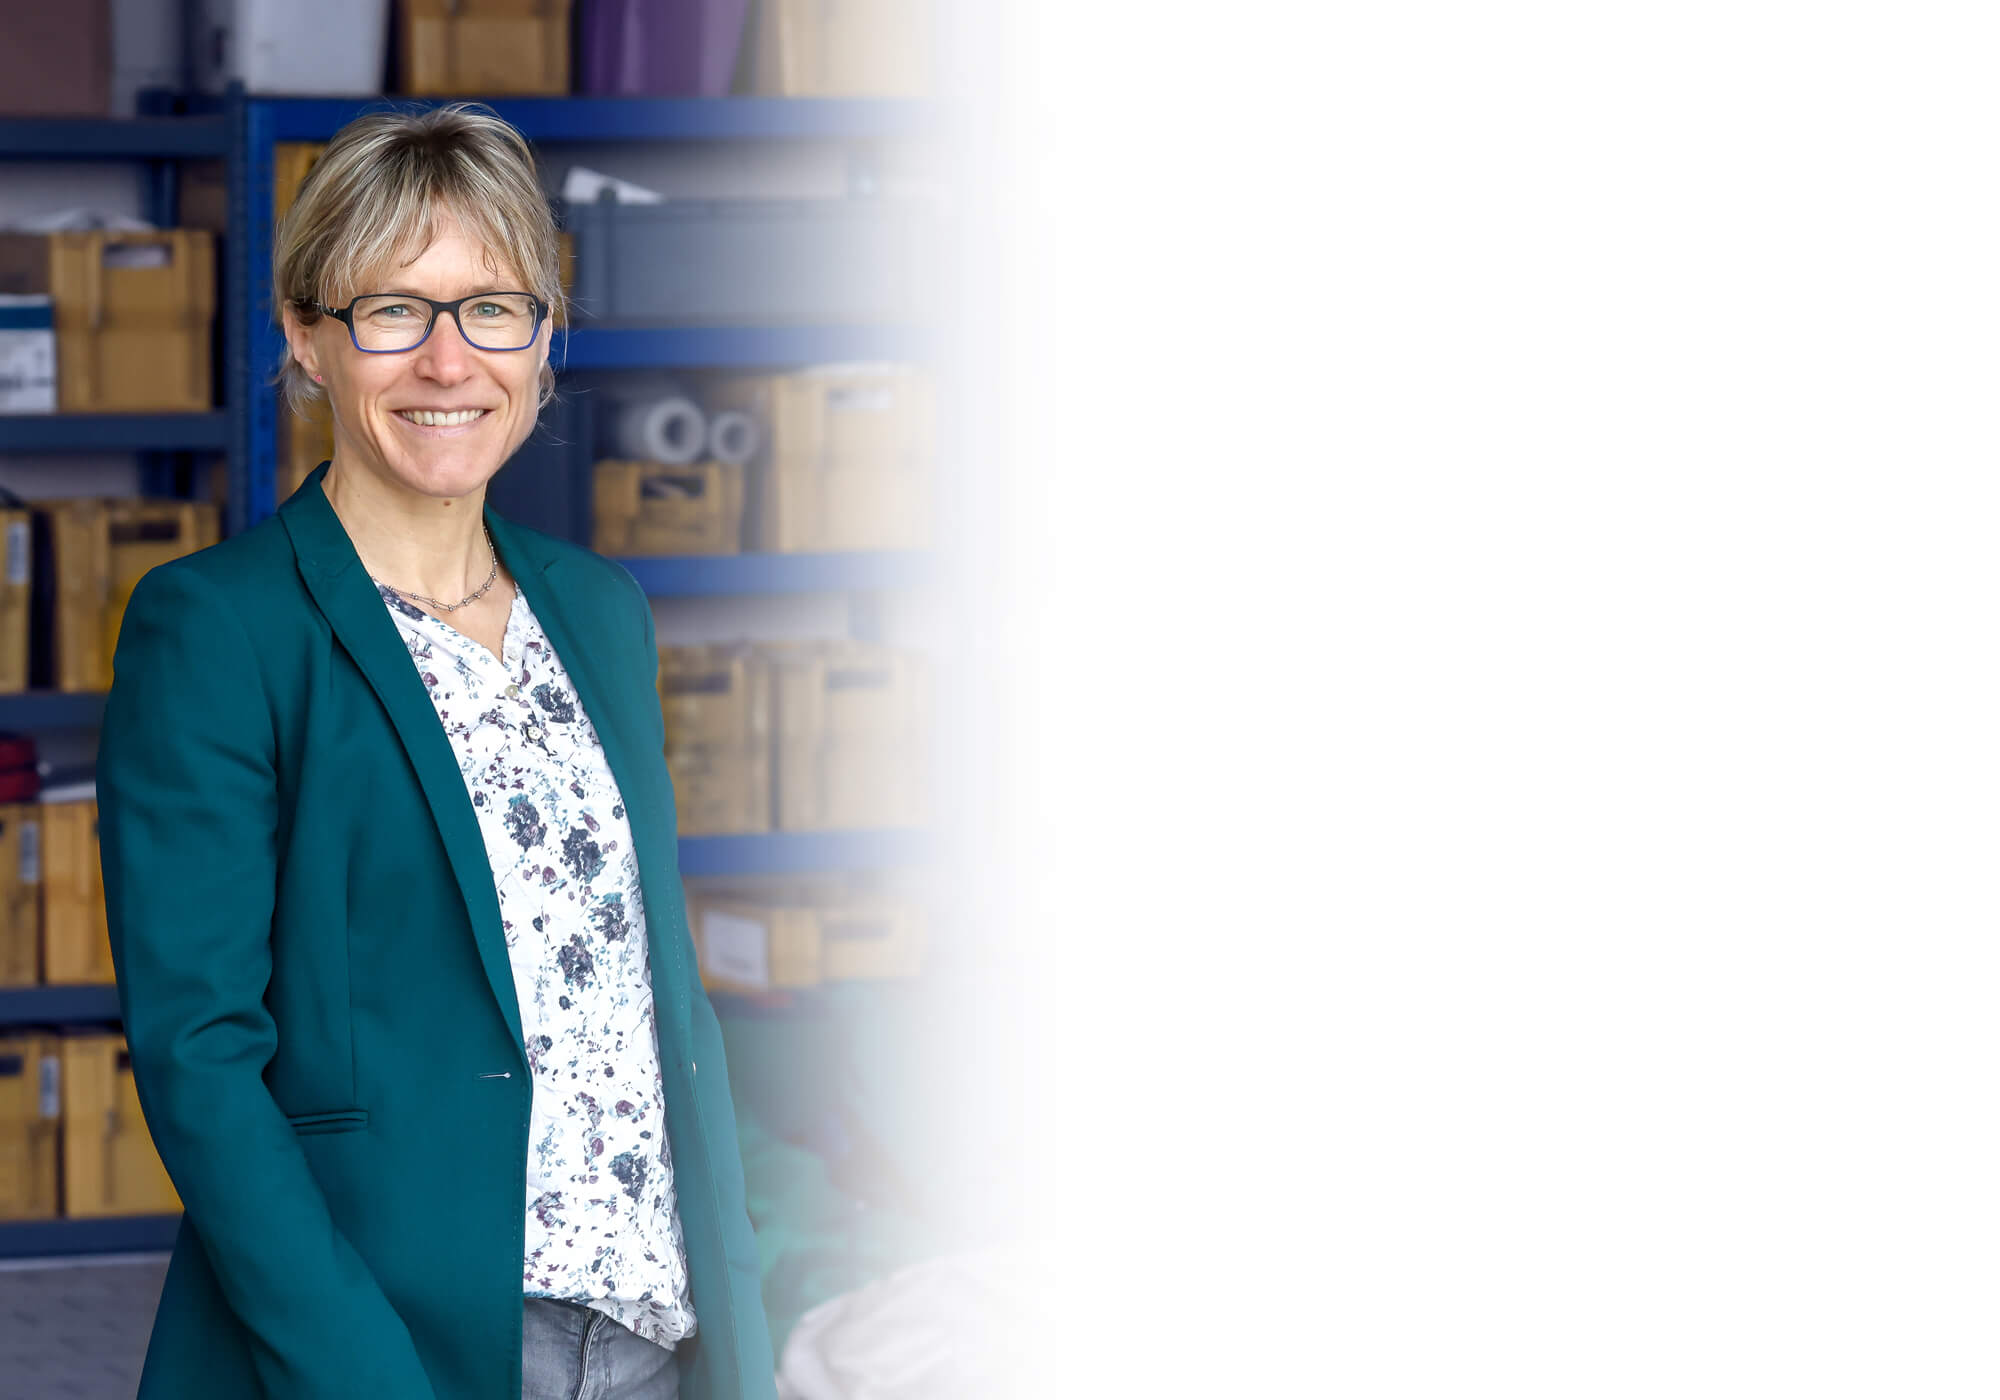 Birgit Hummel ist Geschäftsführerin des GaLa-Service Rhein-Erft. Sie trägt eine Brille und ein grüne Jacke und lächelt freundlich.